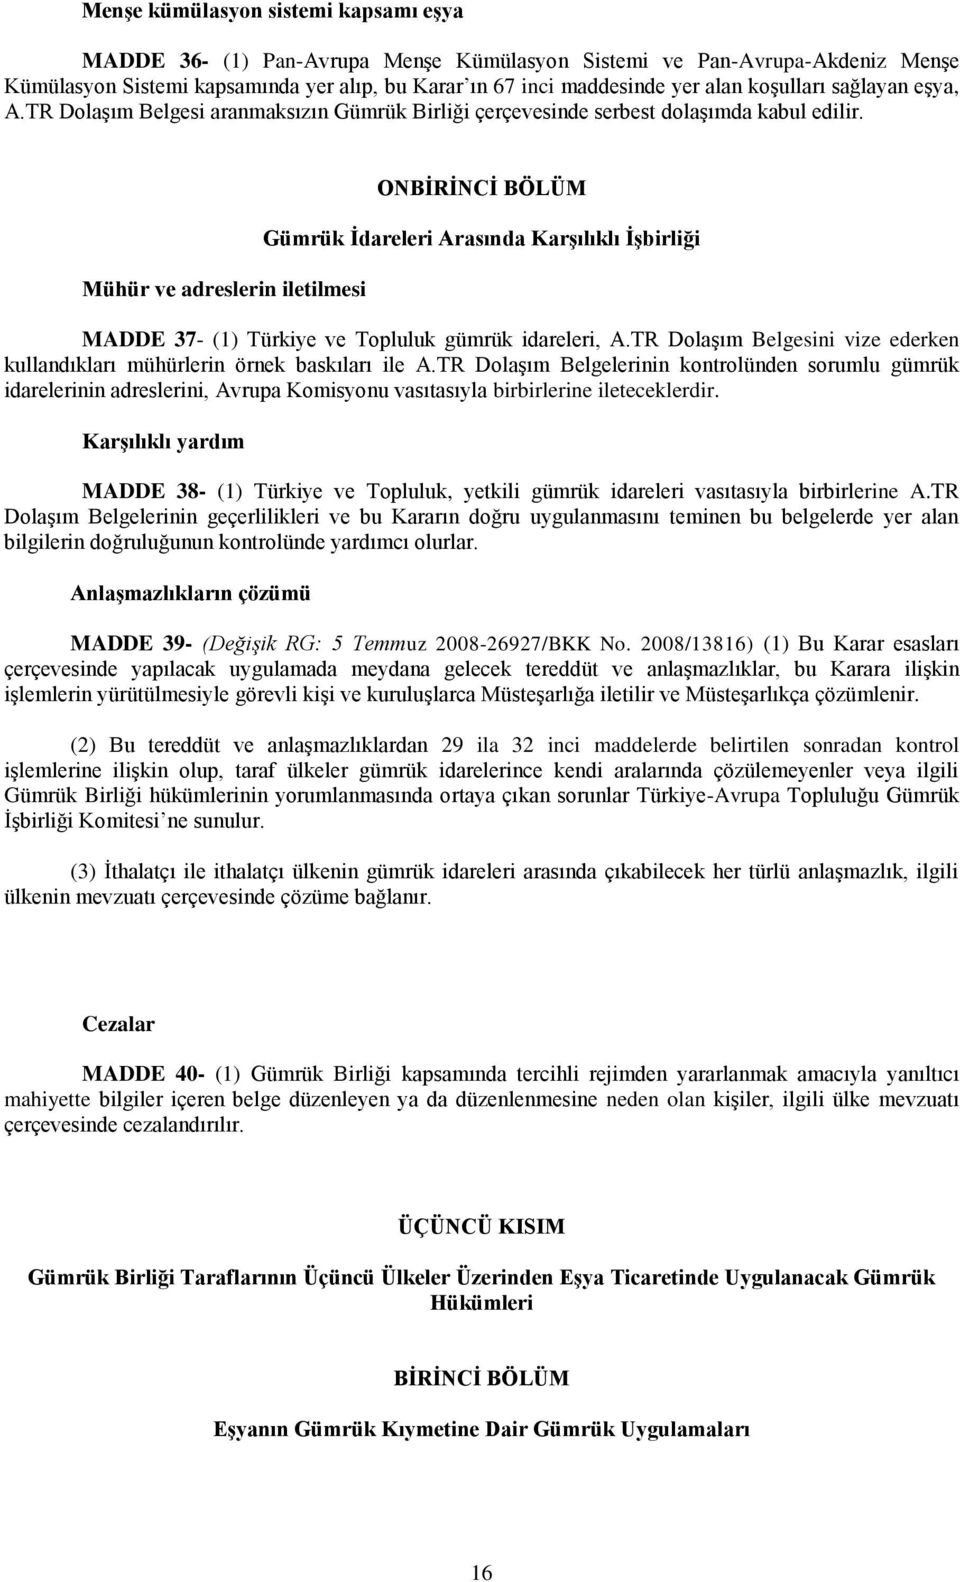 Mühür ve adreslerin iletilmesi ONBĠRĠNCĠ BÖLÜM Gümrük Ġdareleri Arasında KarĢılıklı ĠĢbirliği MADDE 37- (1) Türkiye ve Topluluk gümrük idareleri, A.